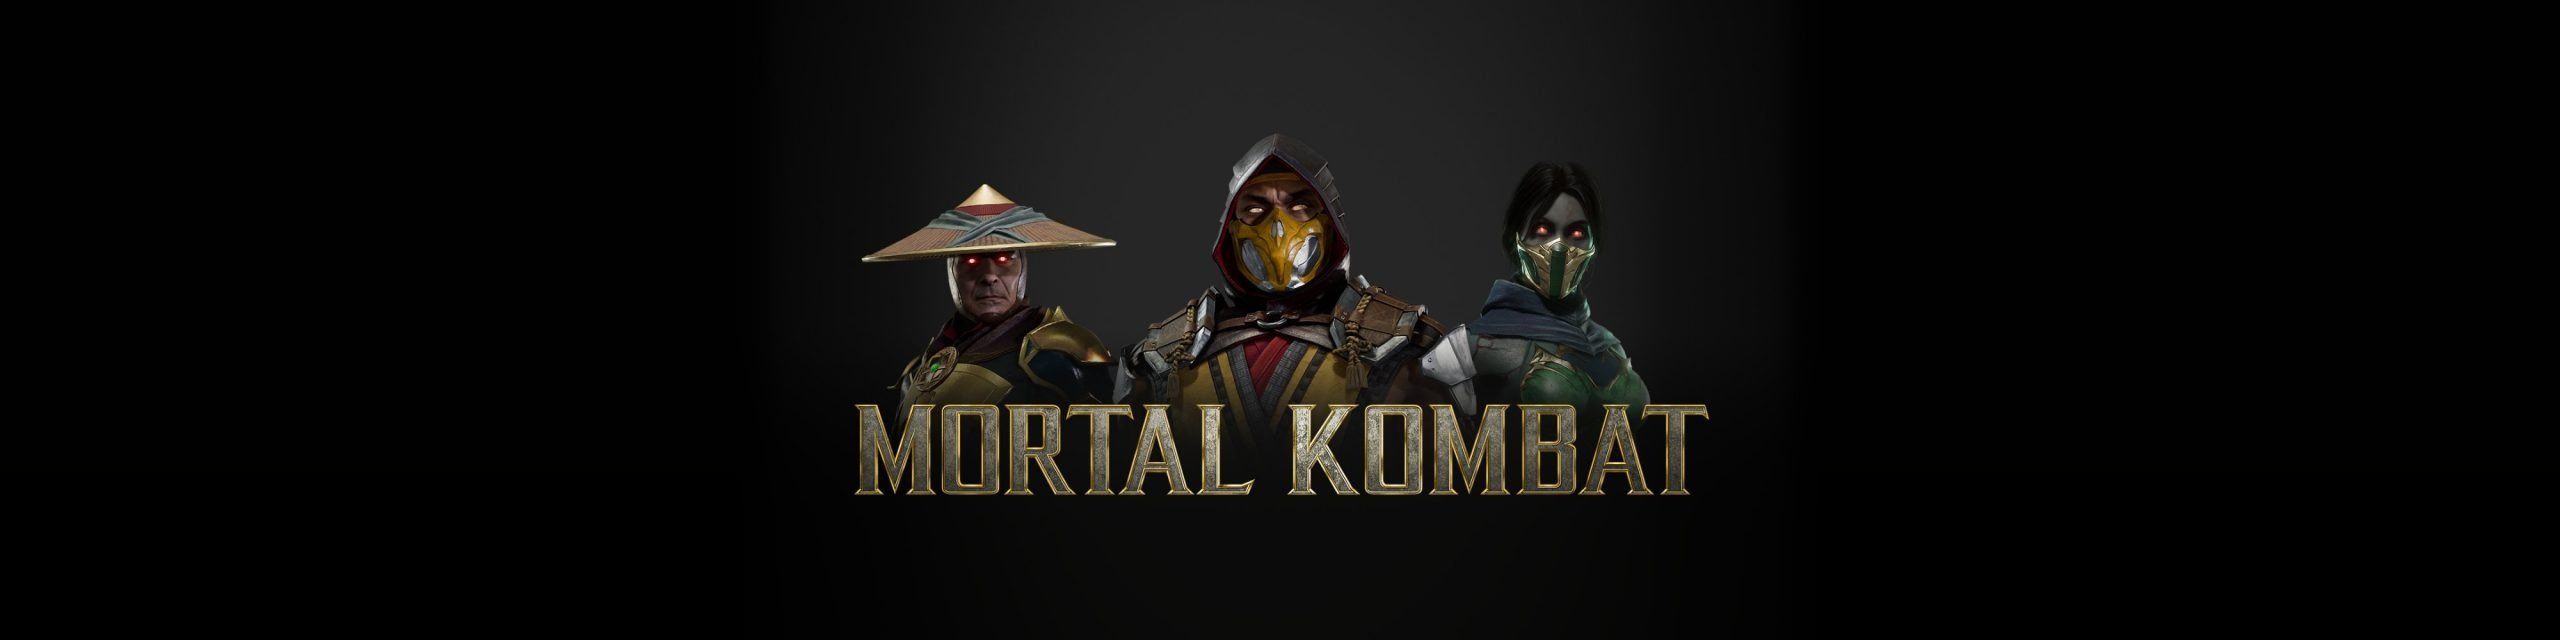 Ставки на Mortal Kombat